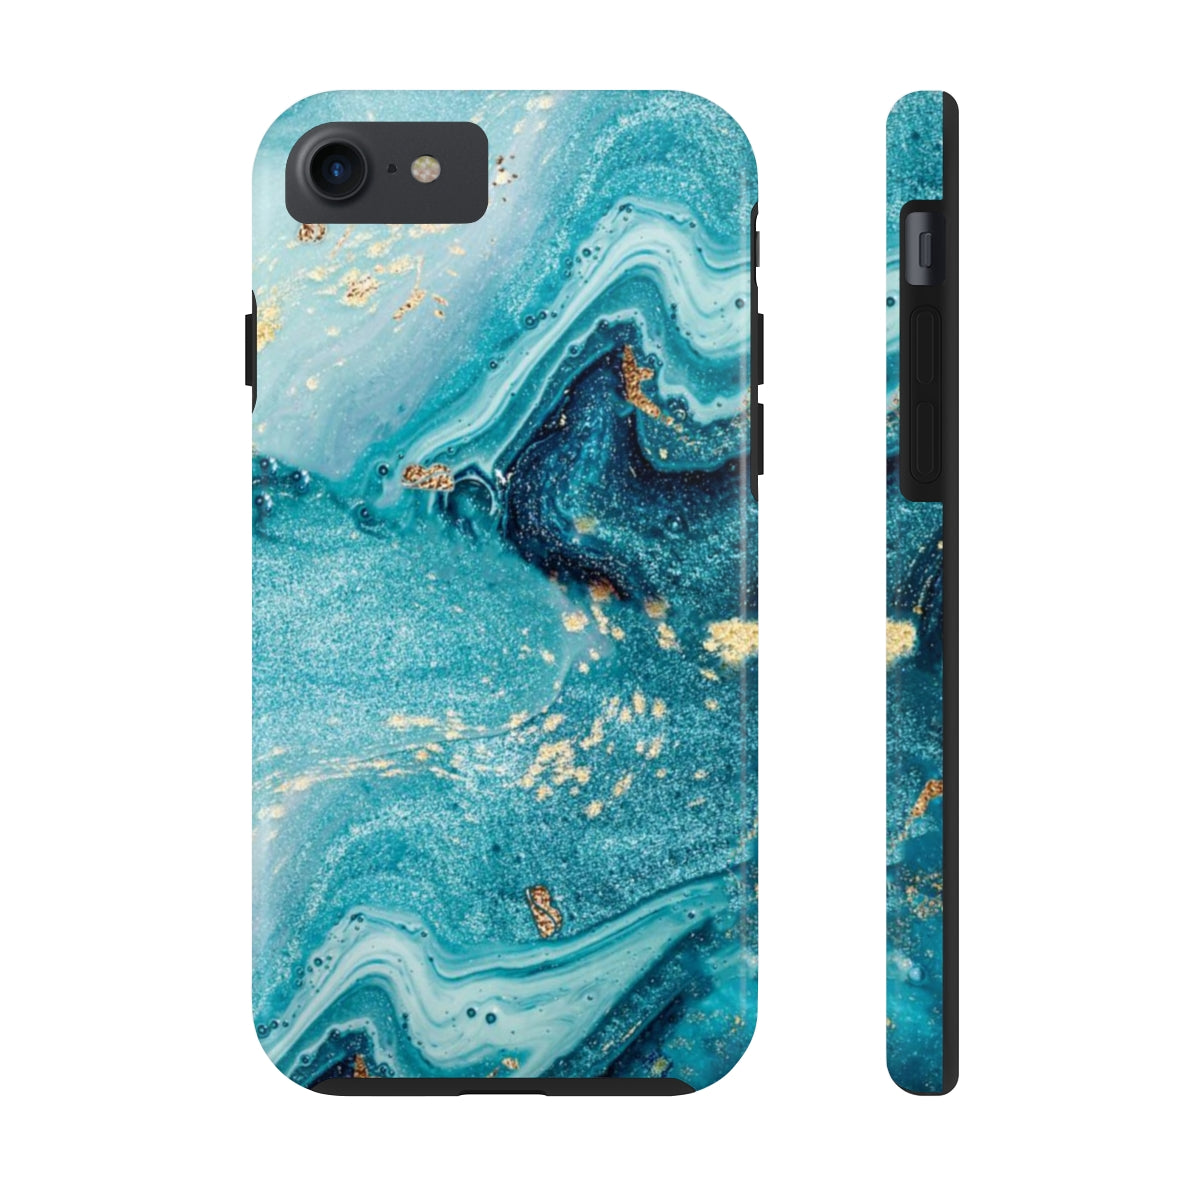 Tough Phone Case - Blue Marble